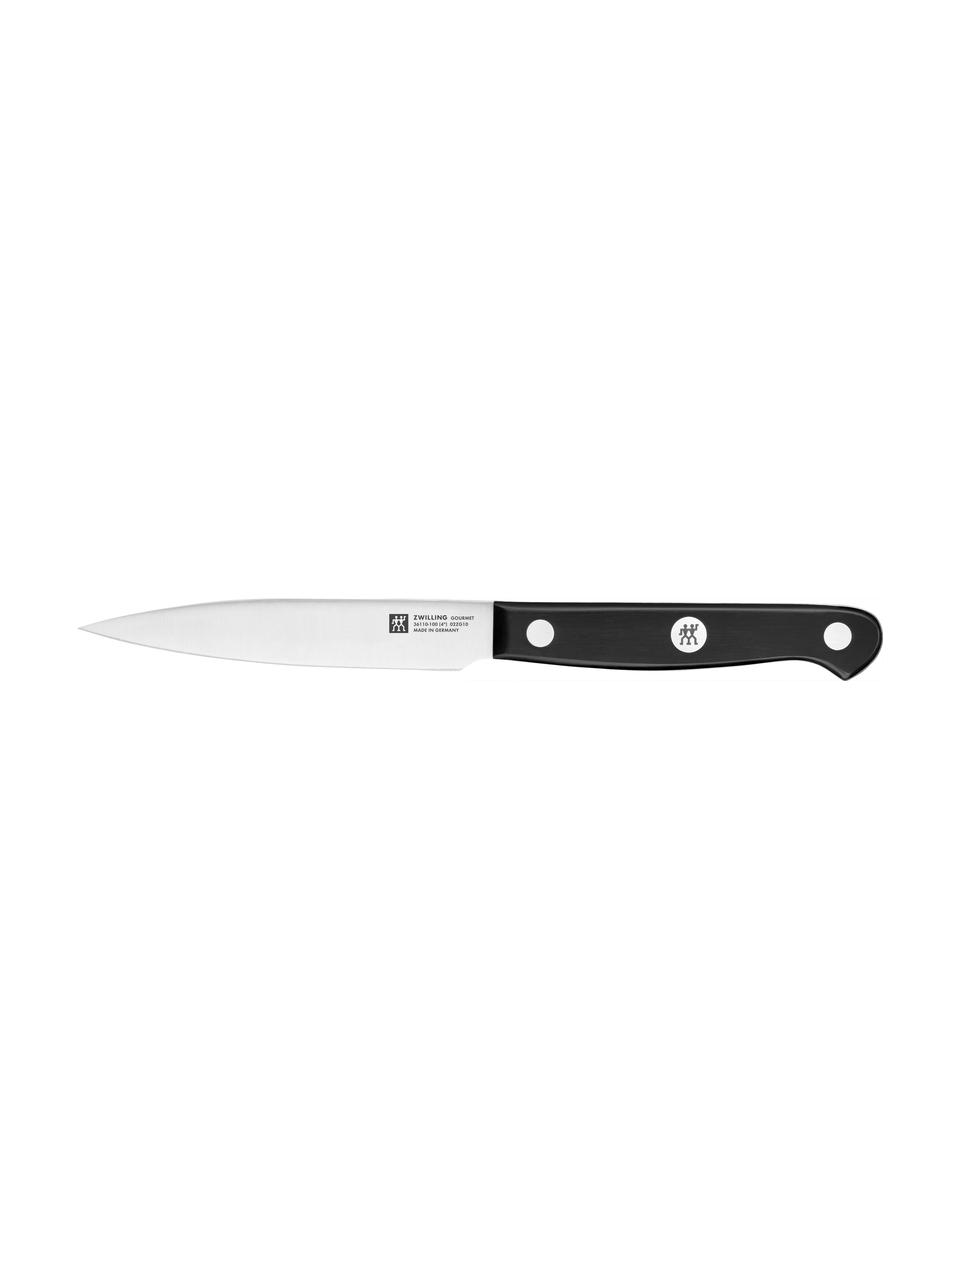 Selbstschärfender Messerblock Gourmet mit 5 Messern und 1 Schere, Griffe: Kunststoff, Grau, Silberfarben, Schwarz, Set mit verschiedenen Grössen